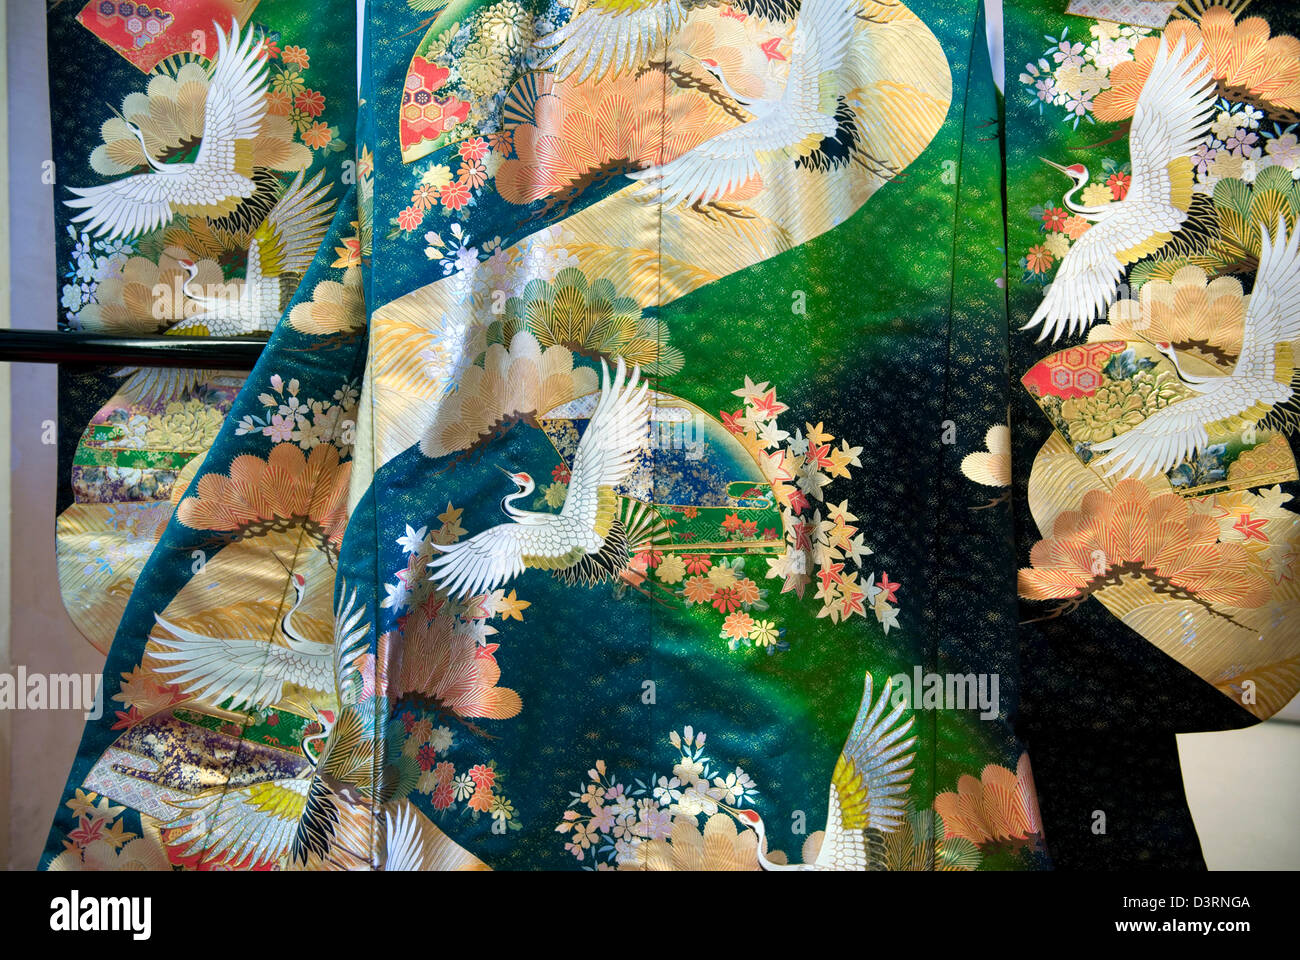 Kimono de mariage de printemps sur l'affichage a les représentations de fleurs de cerisier et de grues japonaises contre un fond coloré. Banque D'Images